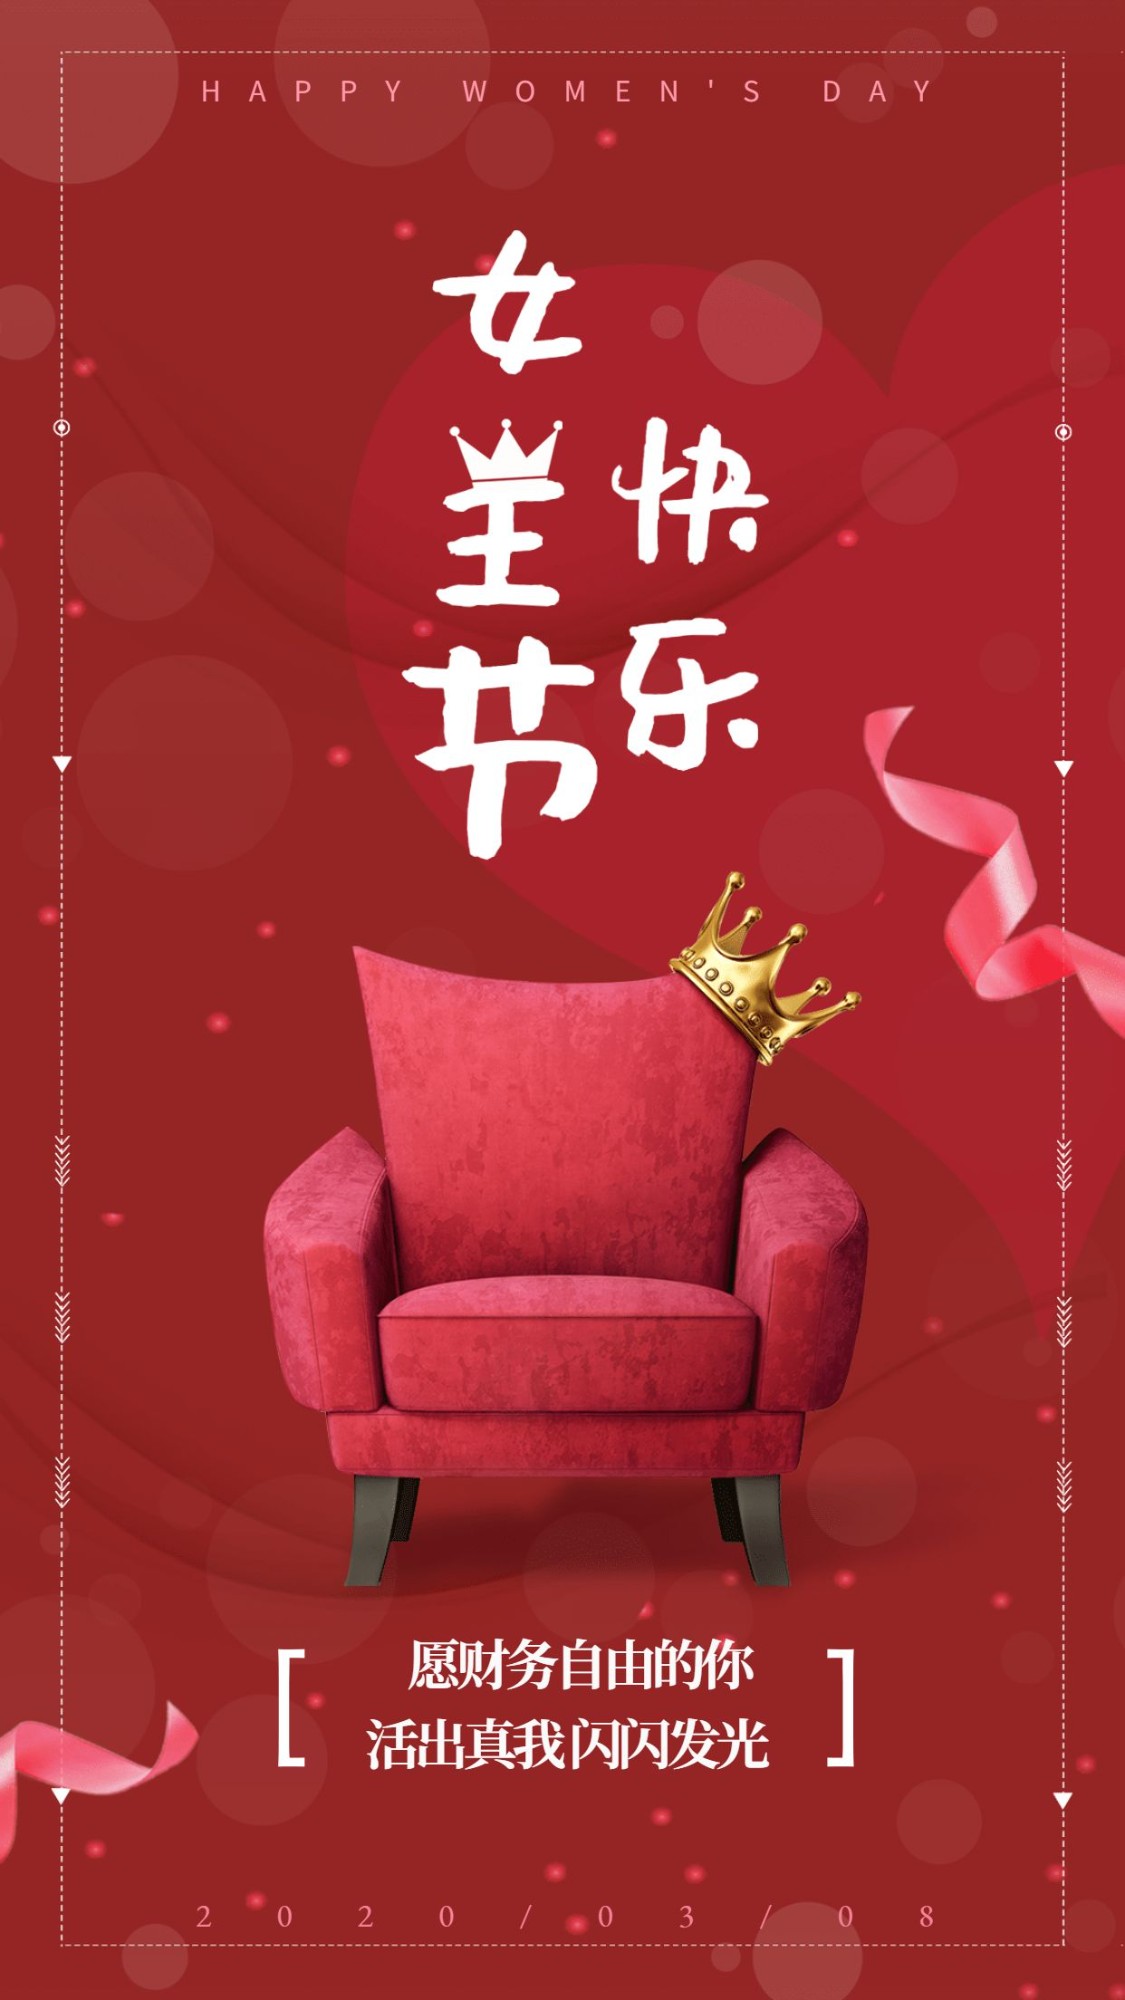 金融保险妇女节女王节快乐简约手机海报预览效果